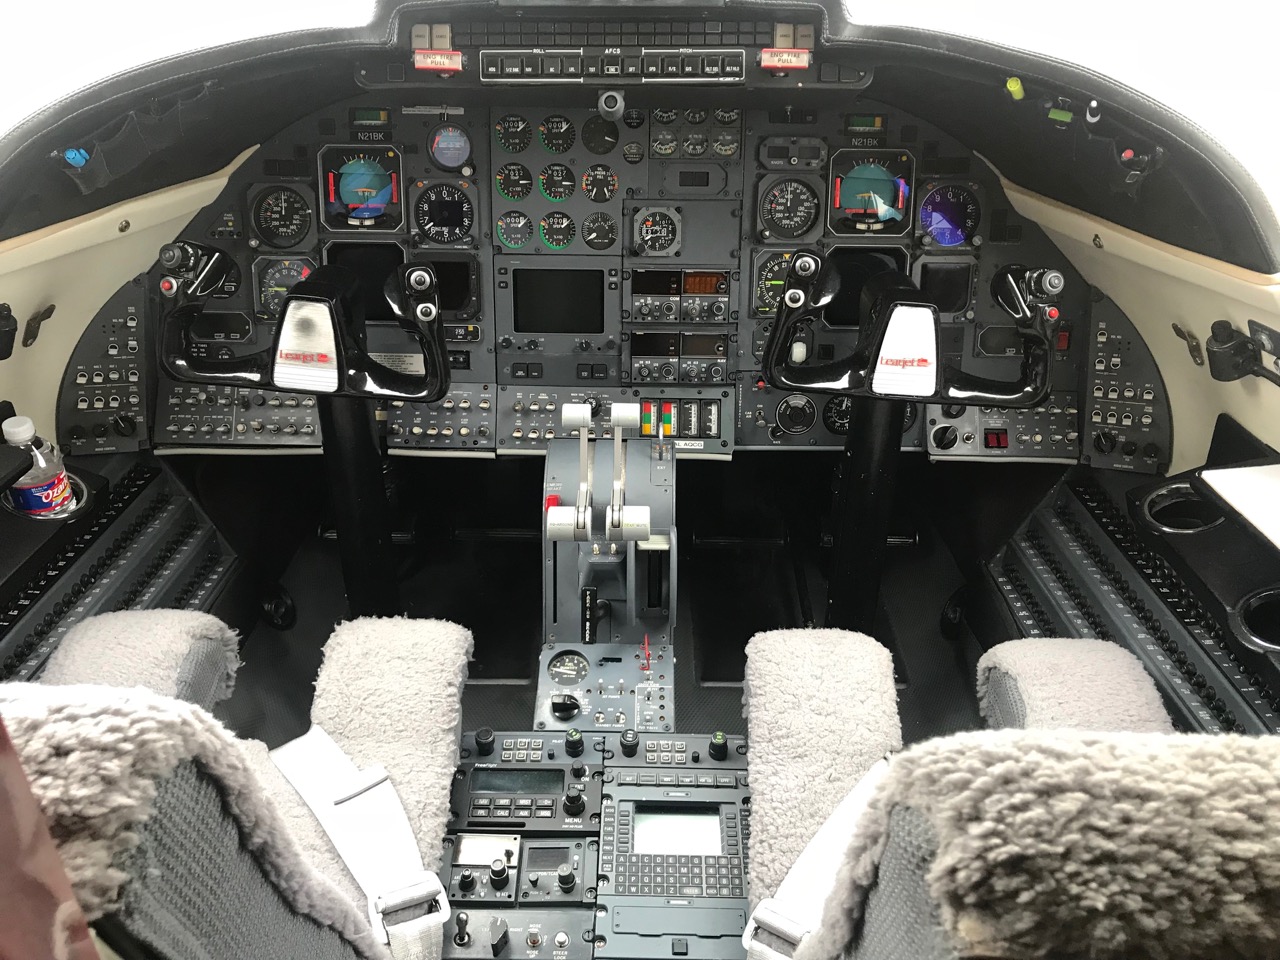 1987 Learjet 35A sn 626